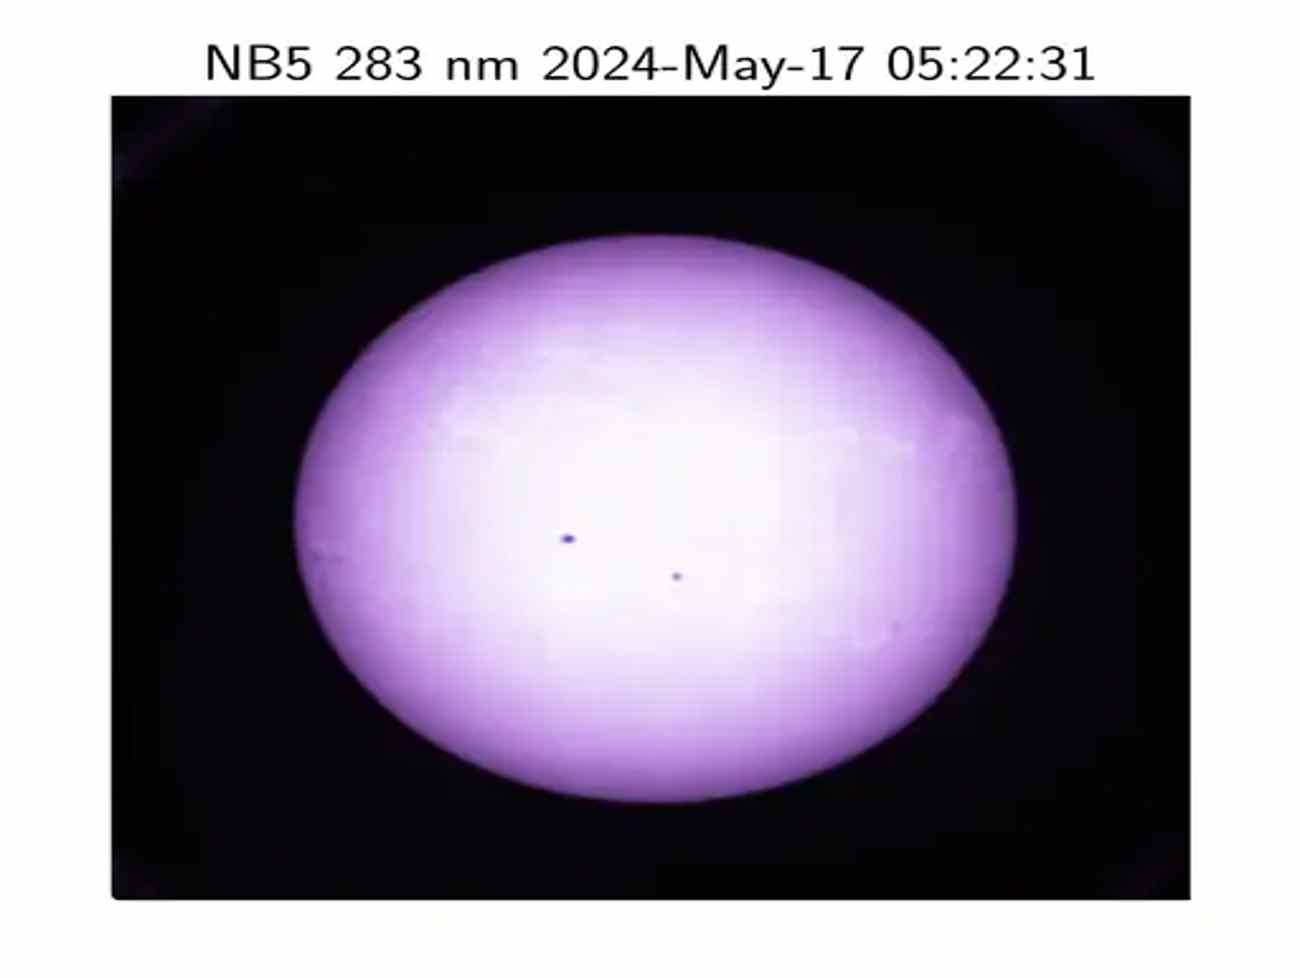 સપાટી પર આવેલા વાવાઝોડાથી રંગબેરંગી દેખાયો સૂર્ય, 15 લાખ કિલોમીટર દૂર આદિત્ય L1ના કેમેરામાં કેપ્ચર